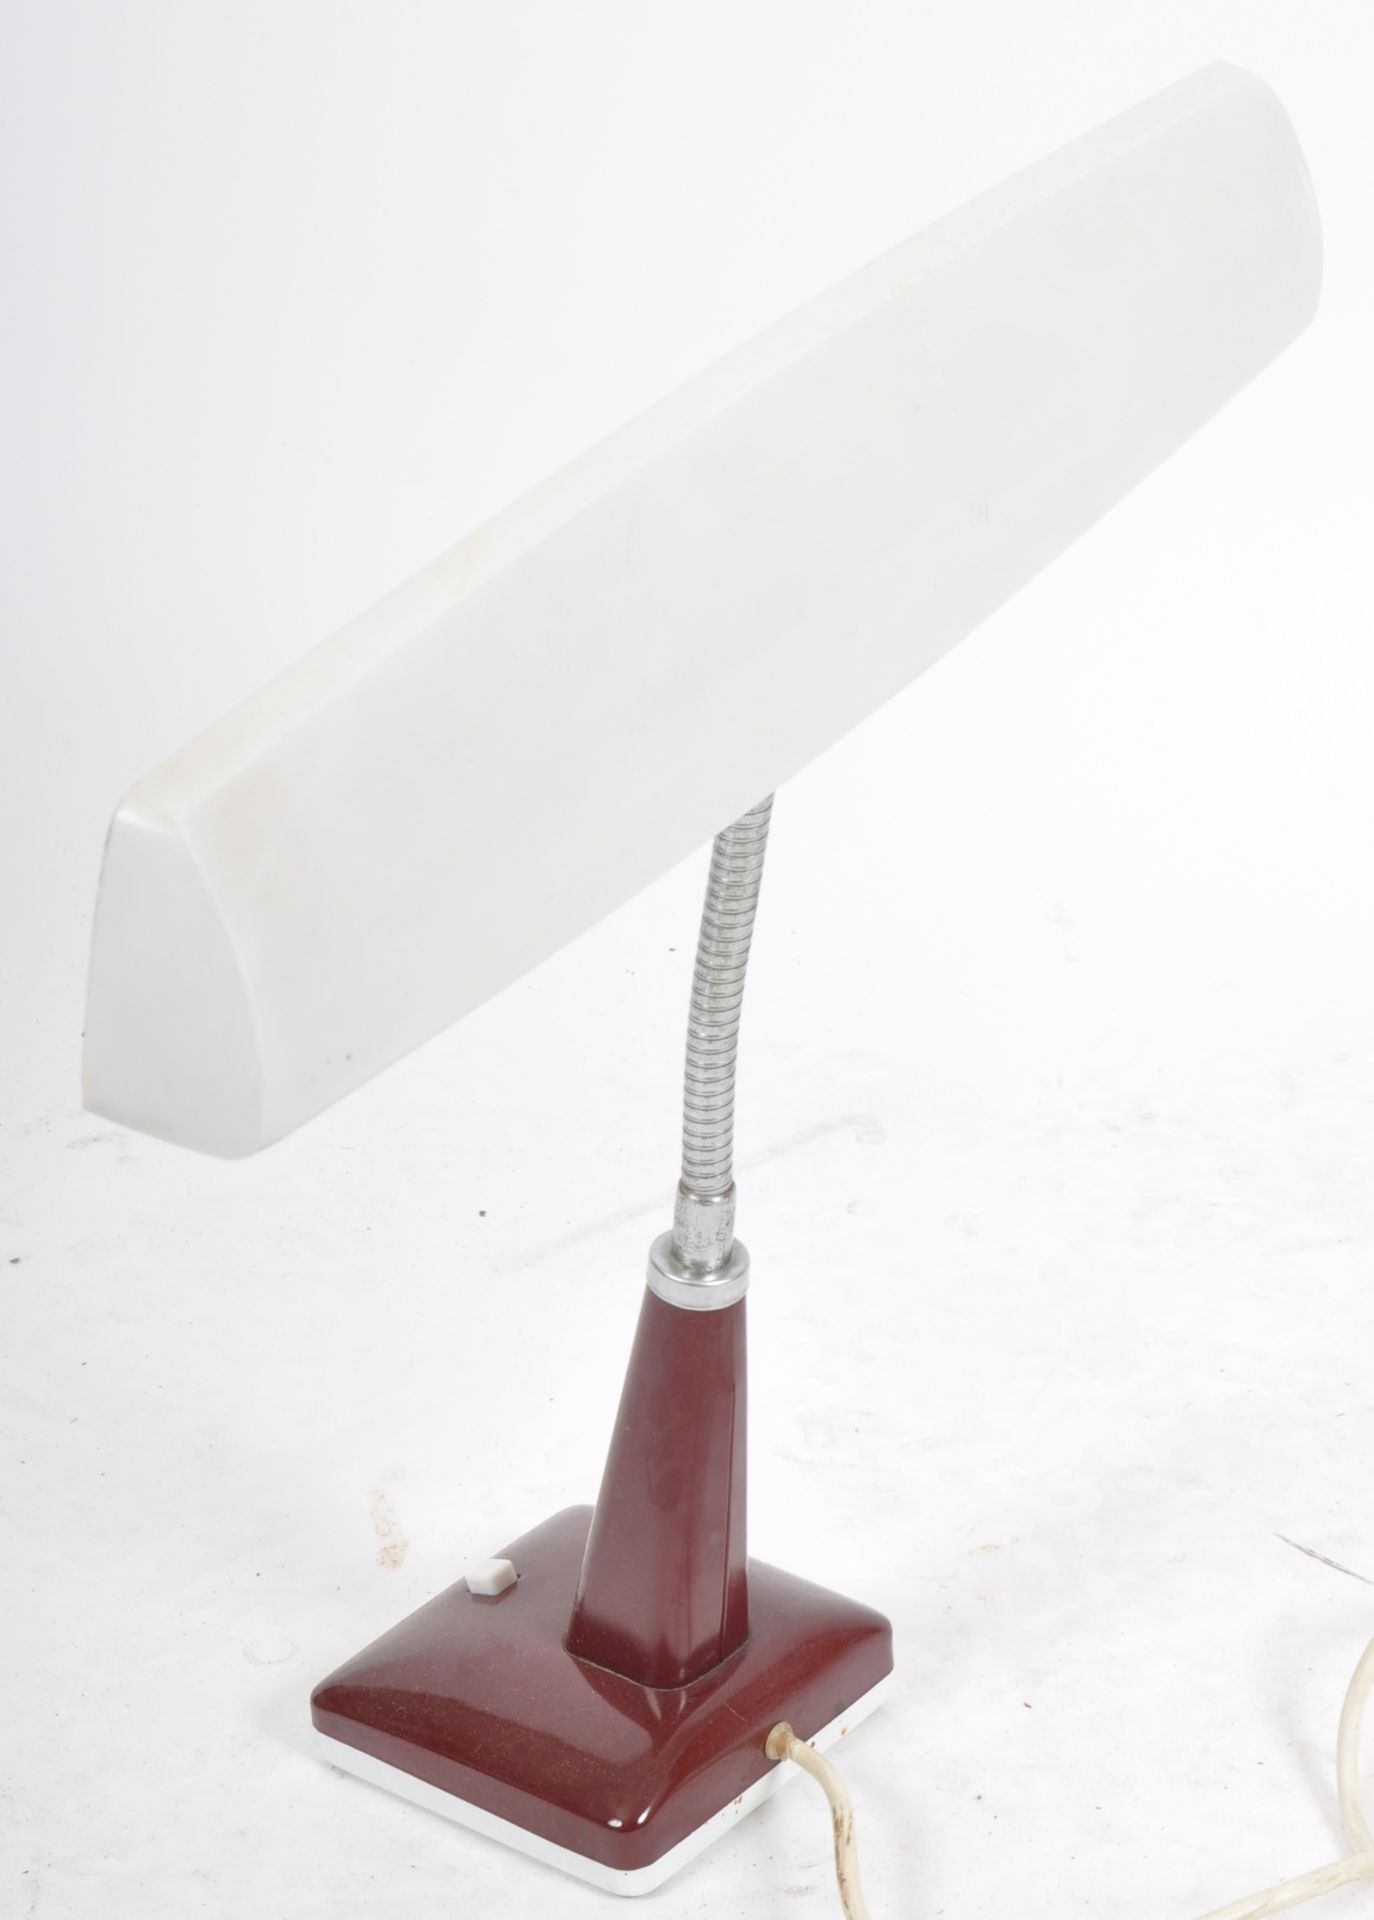 PIFCO - MODEL 993 - DESIGNER ADJUSTABLE DESK LAMP - Image 6 of 6